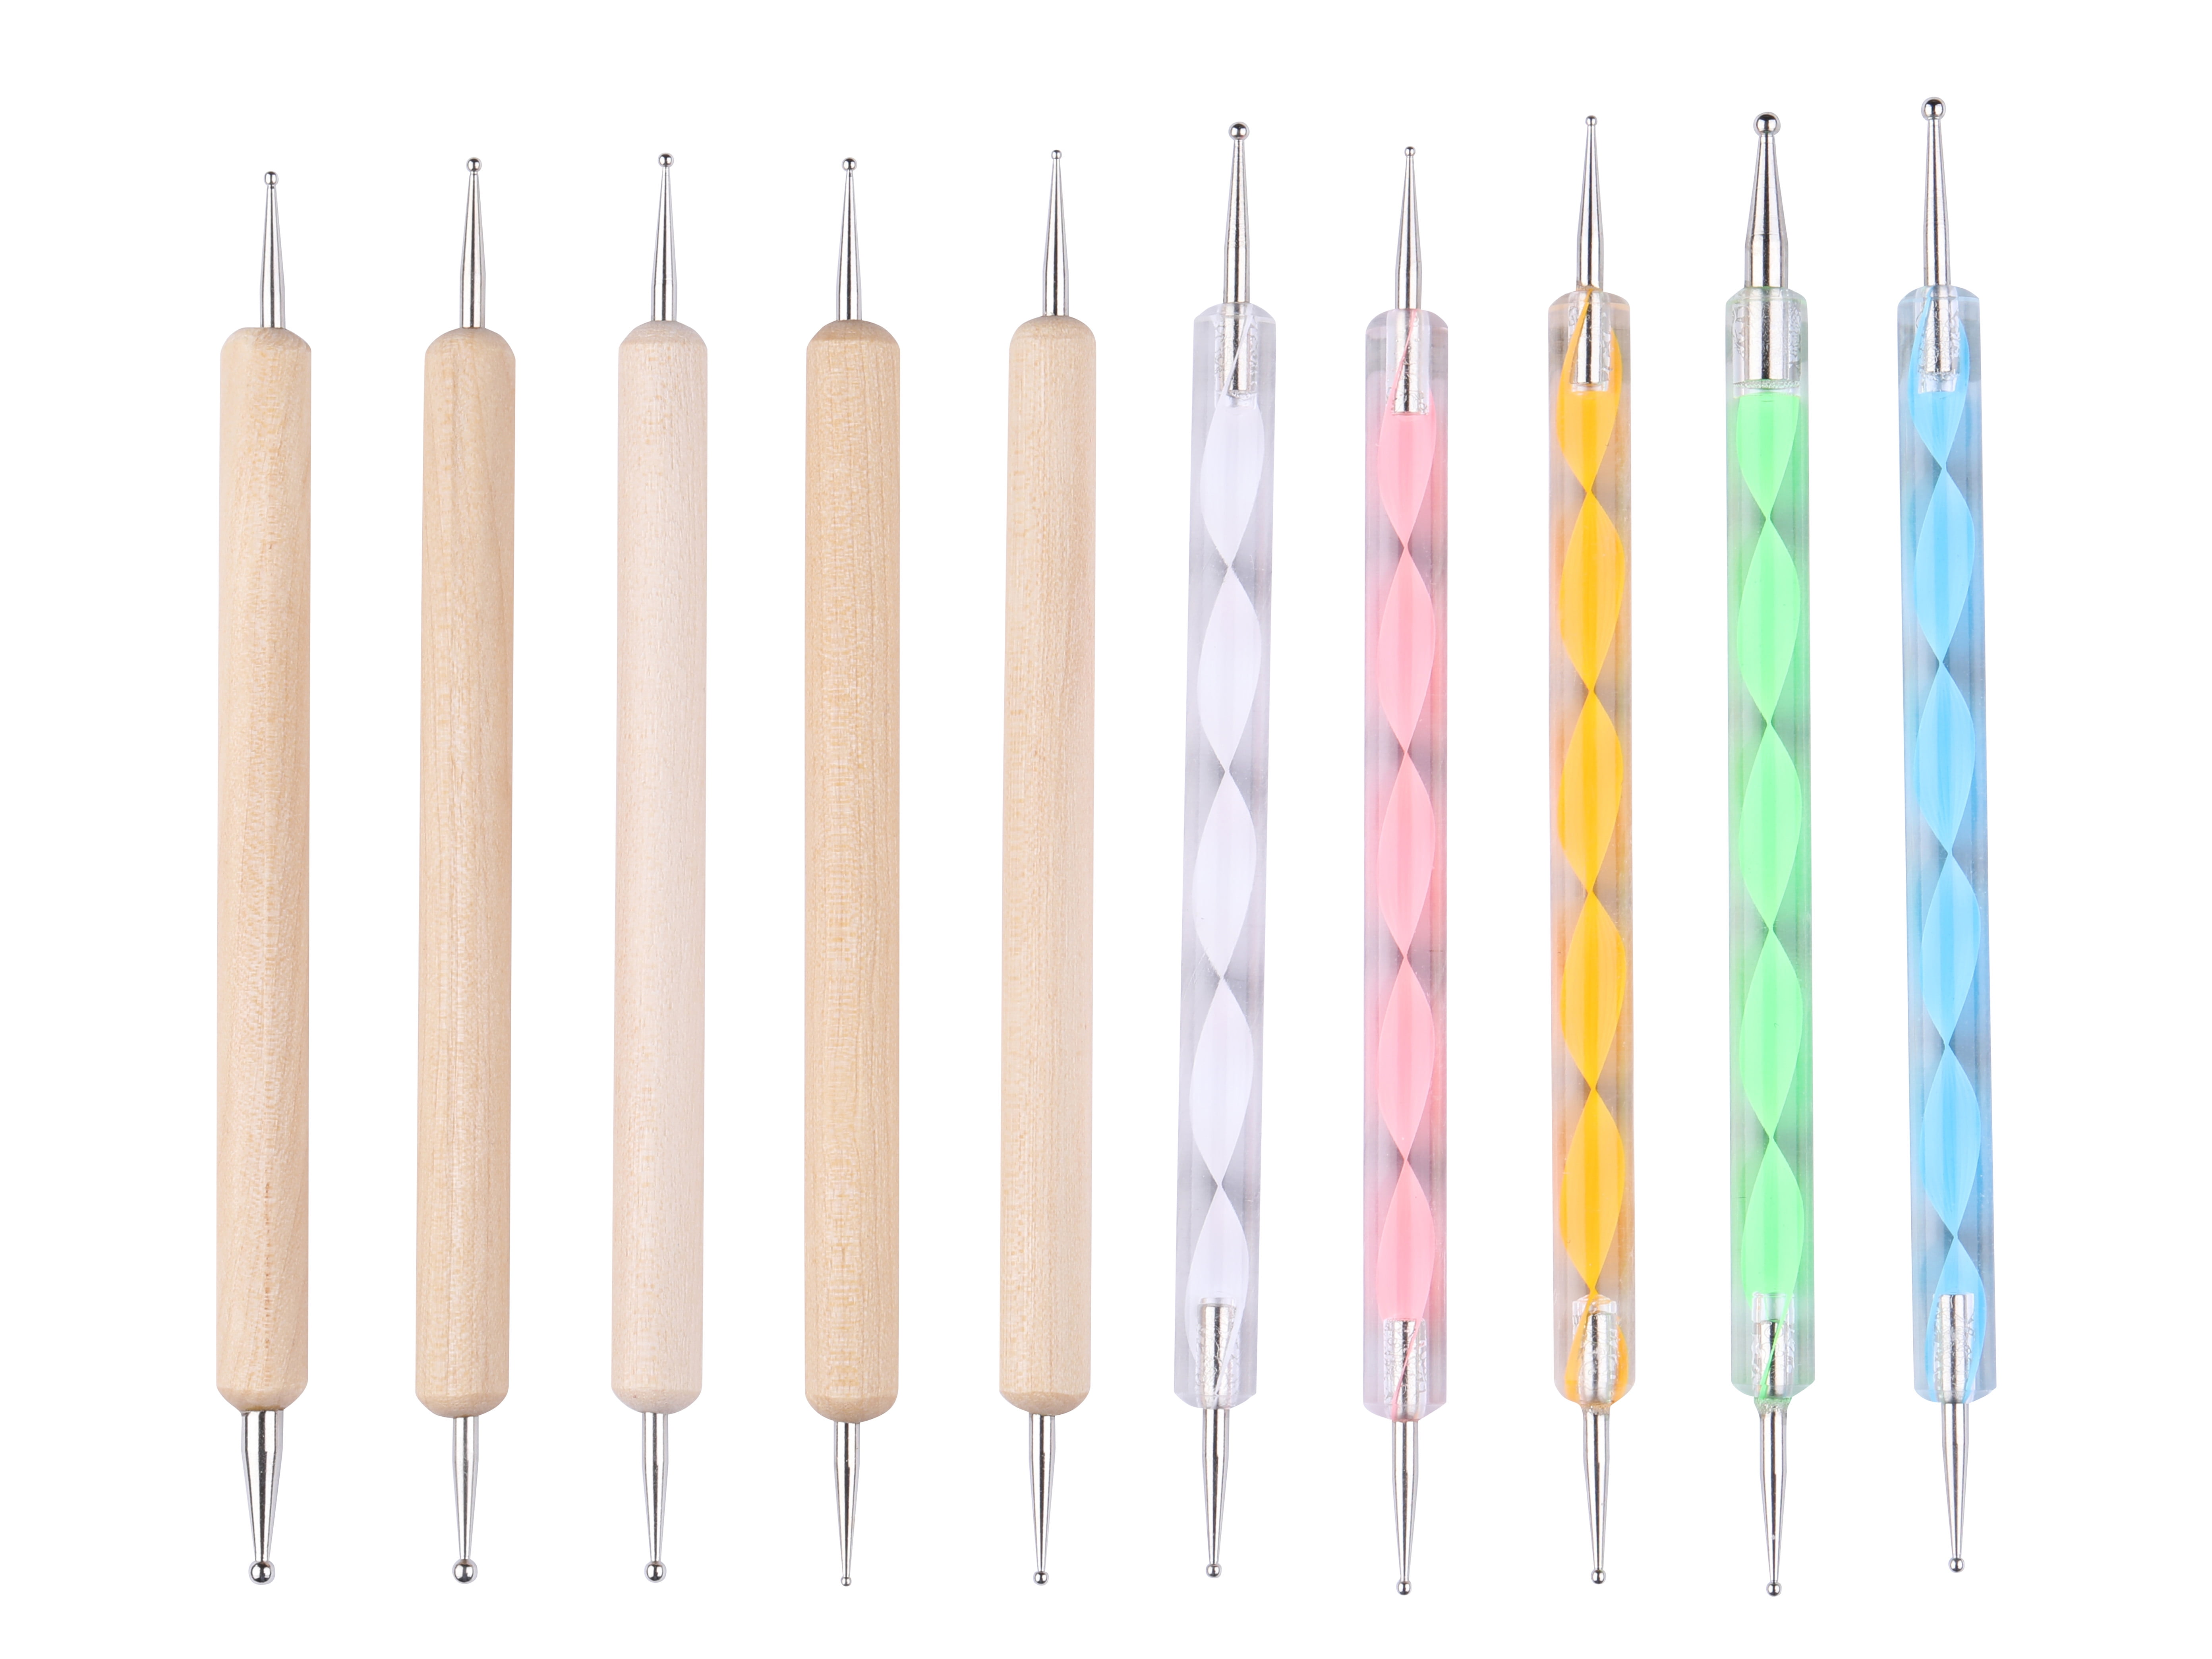 10 PCS Dotting Tools Set Kit for Nail Art Supplies Tool Pens for ...